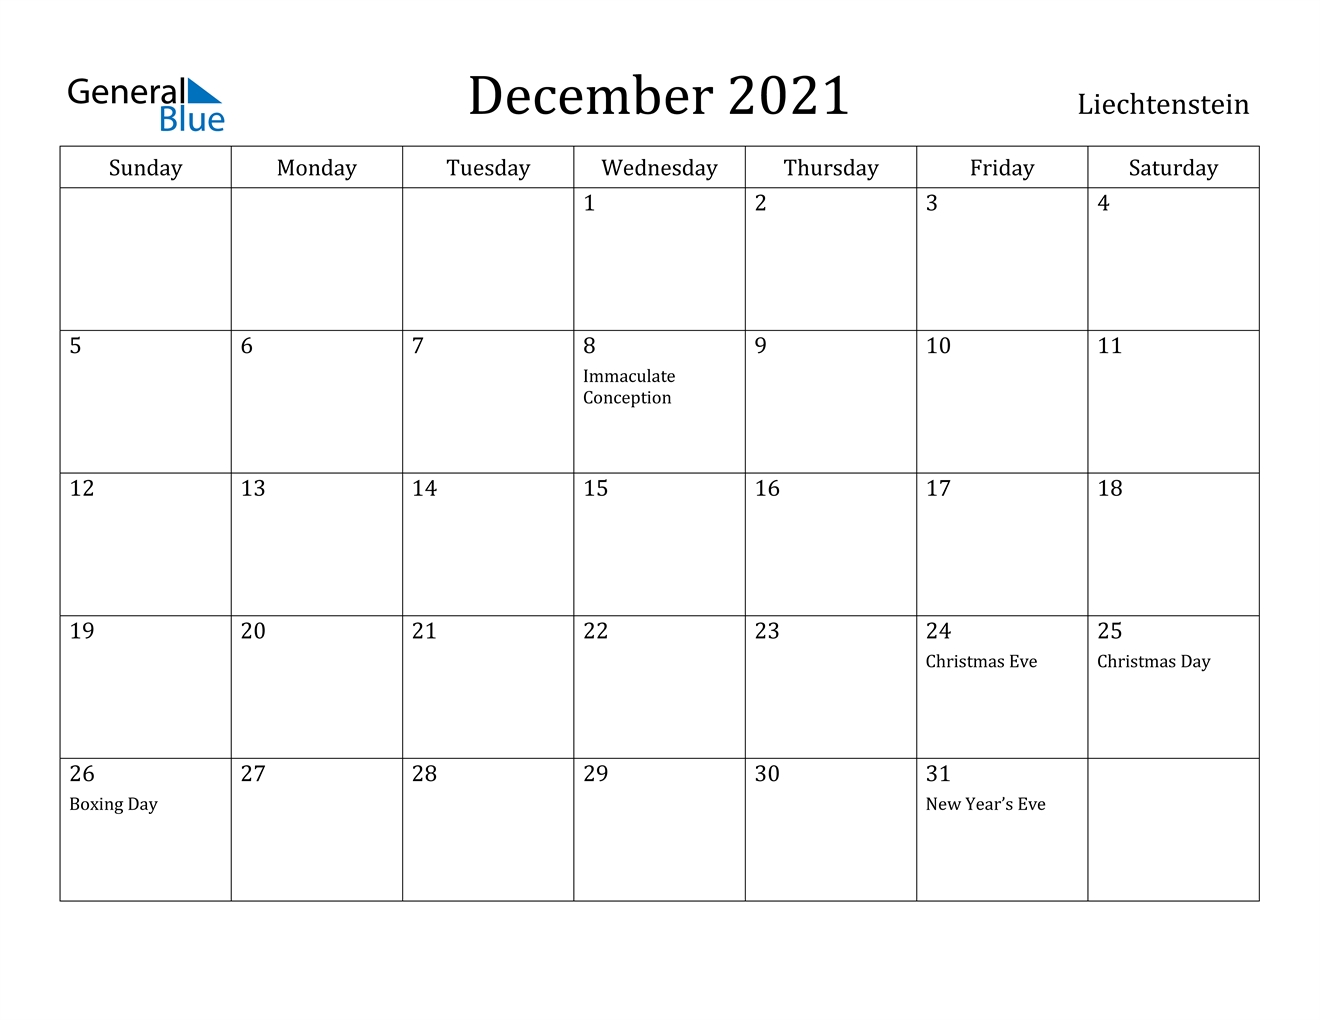 December 2021 Calendar - Liechtenstein November 2020-December 2021 Calendar